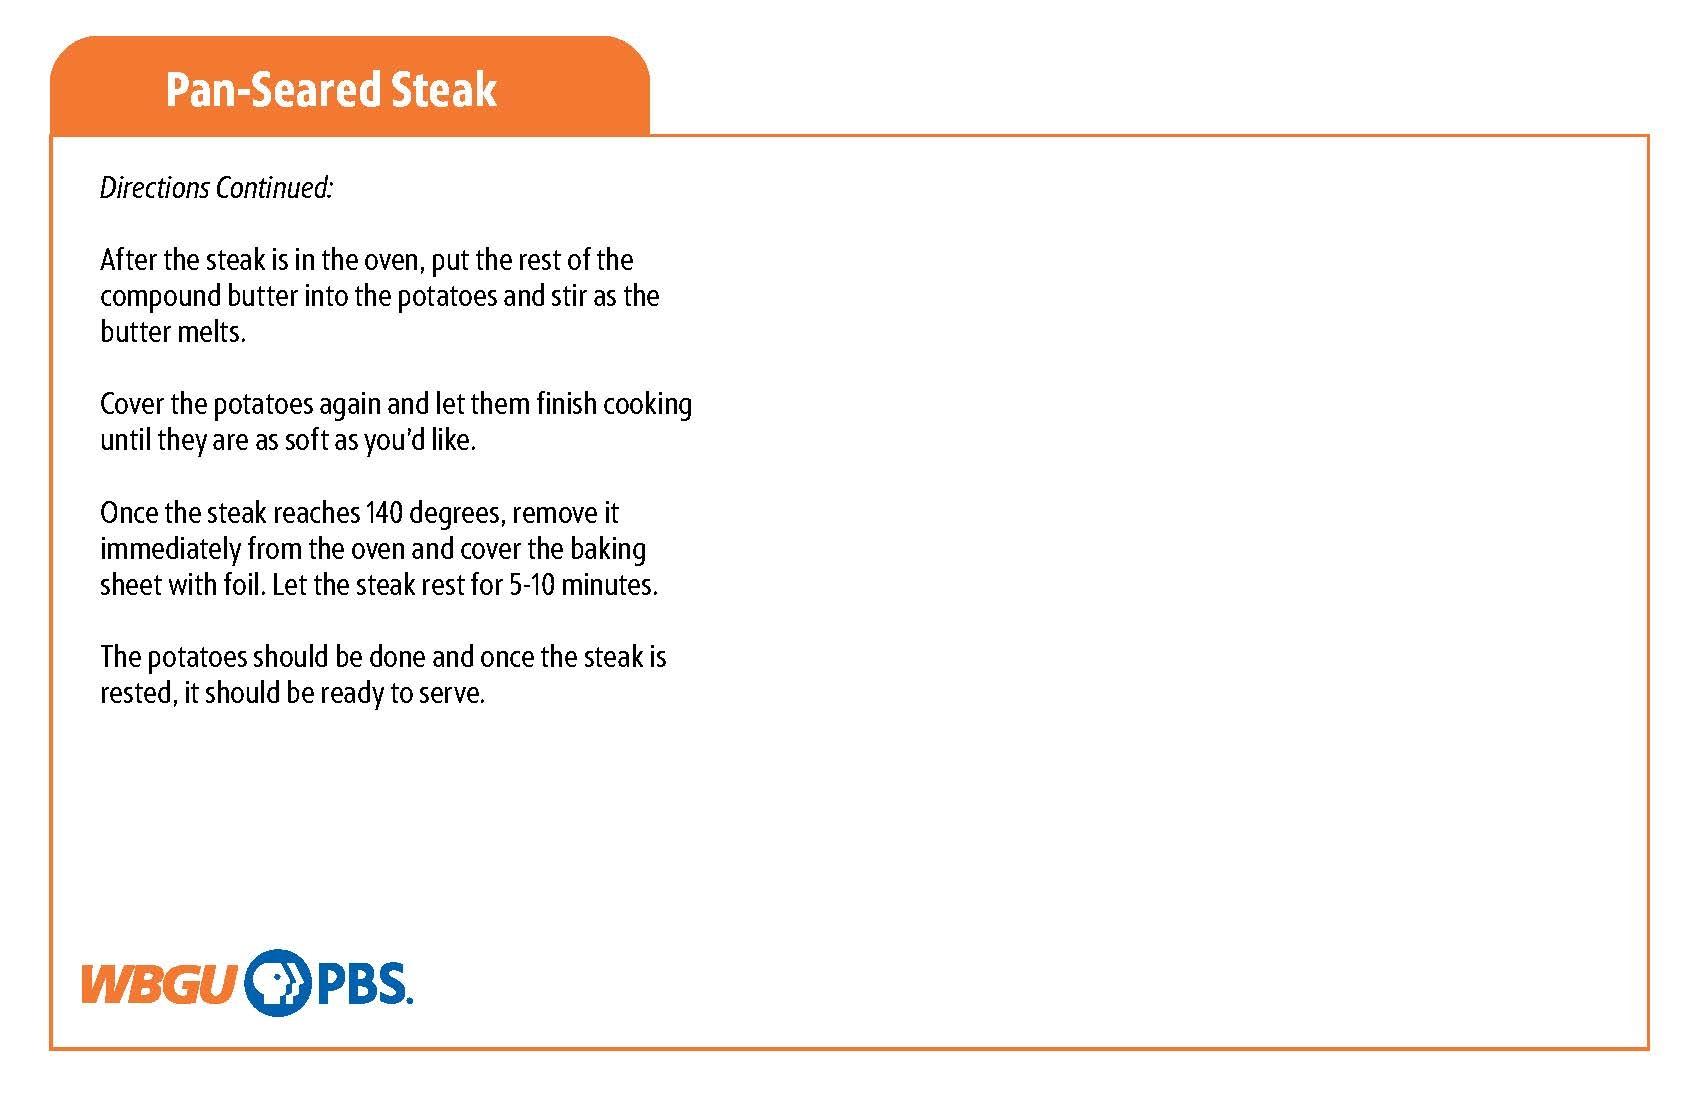 Pan-Seared Steak Recipe continued